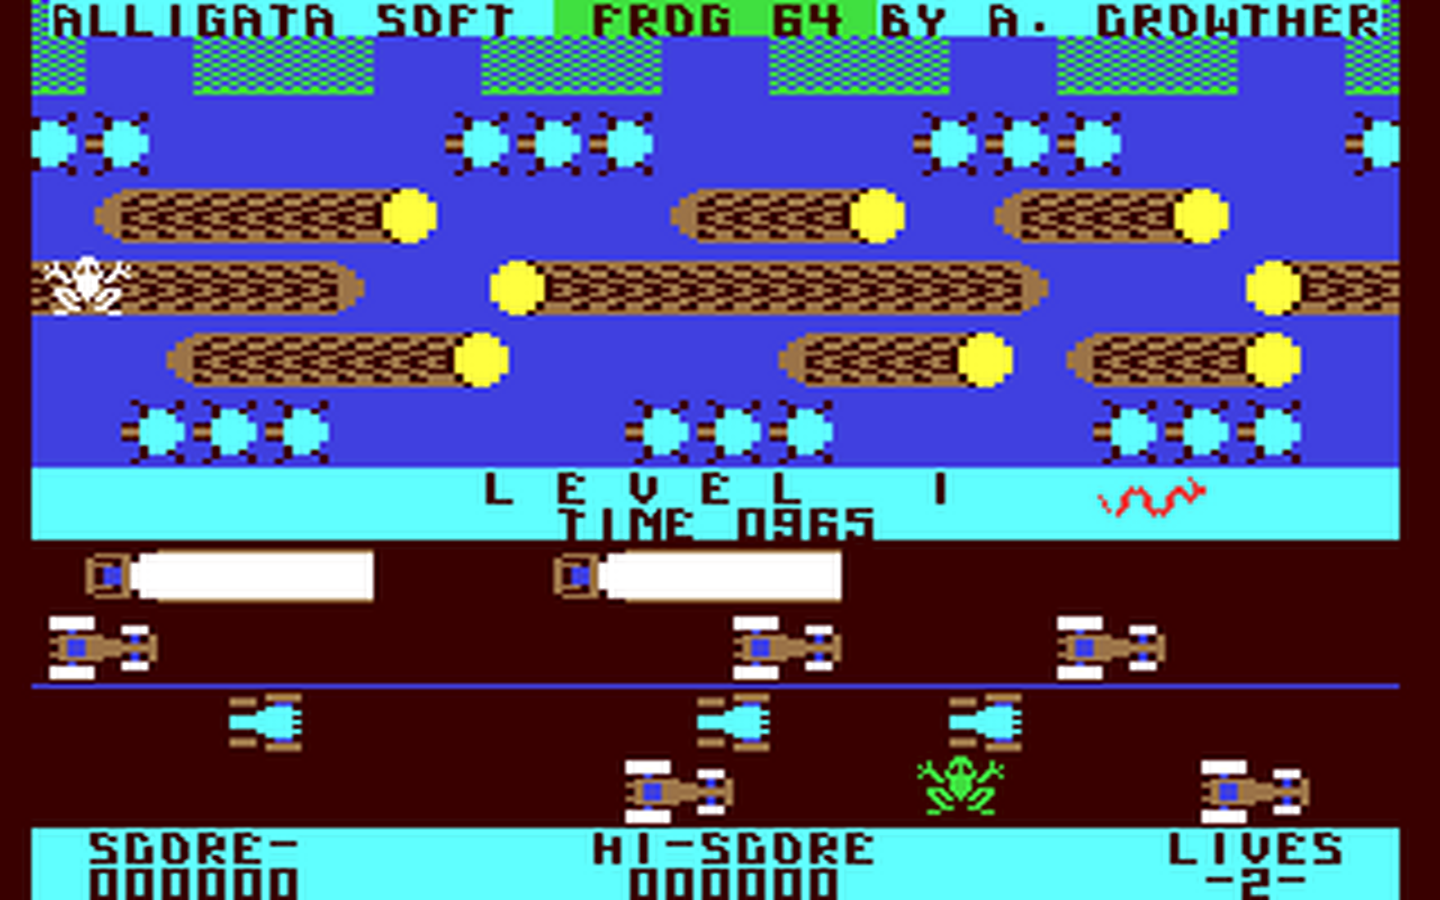 C64 GameBase Frog_64 Alligata_Software 1983